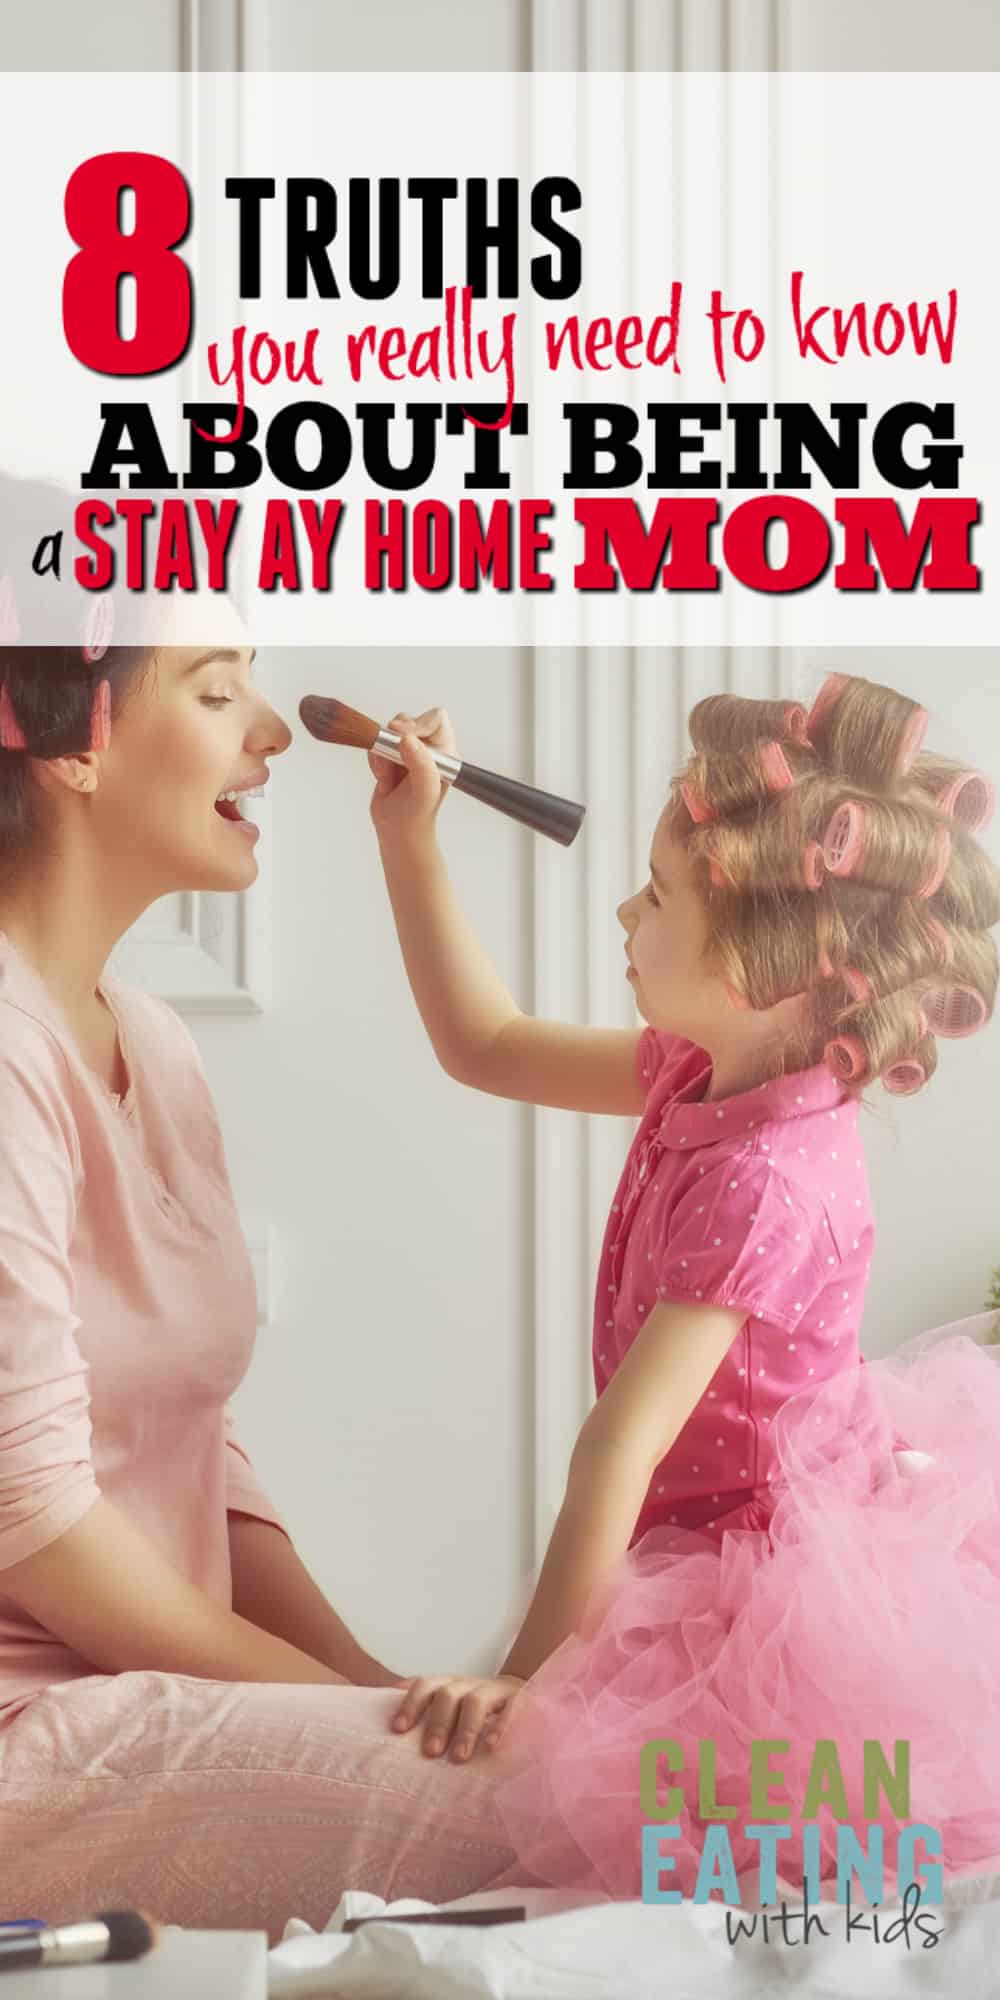  pravda o pobytu doma máma: 8 věcí, které potřebujete vědět.